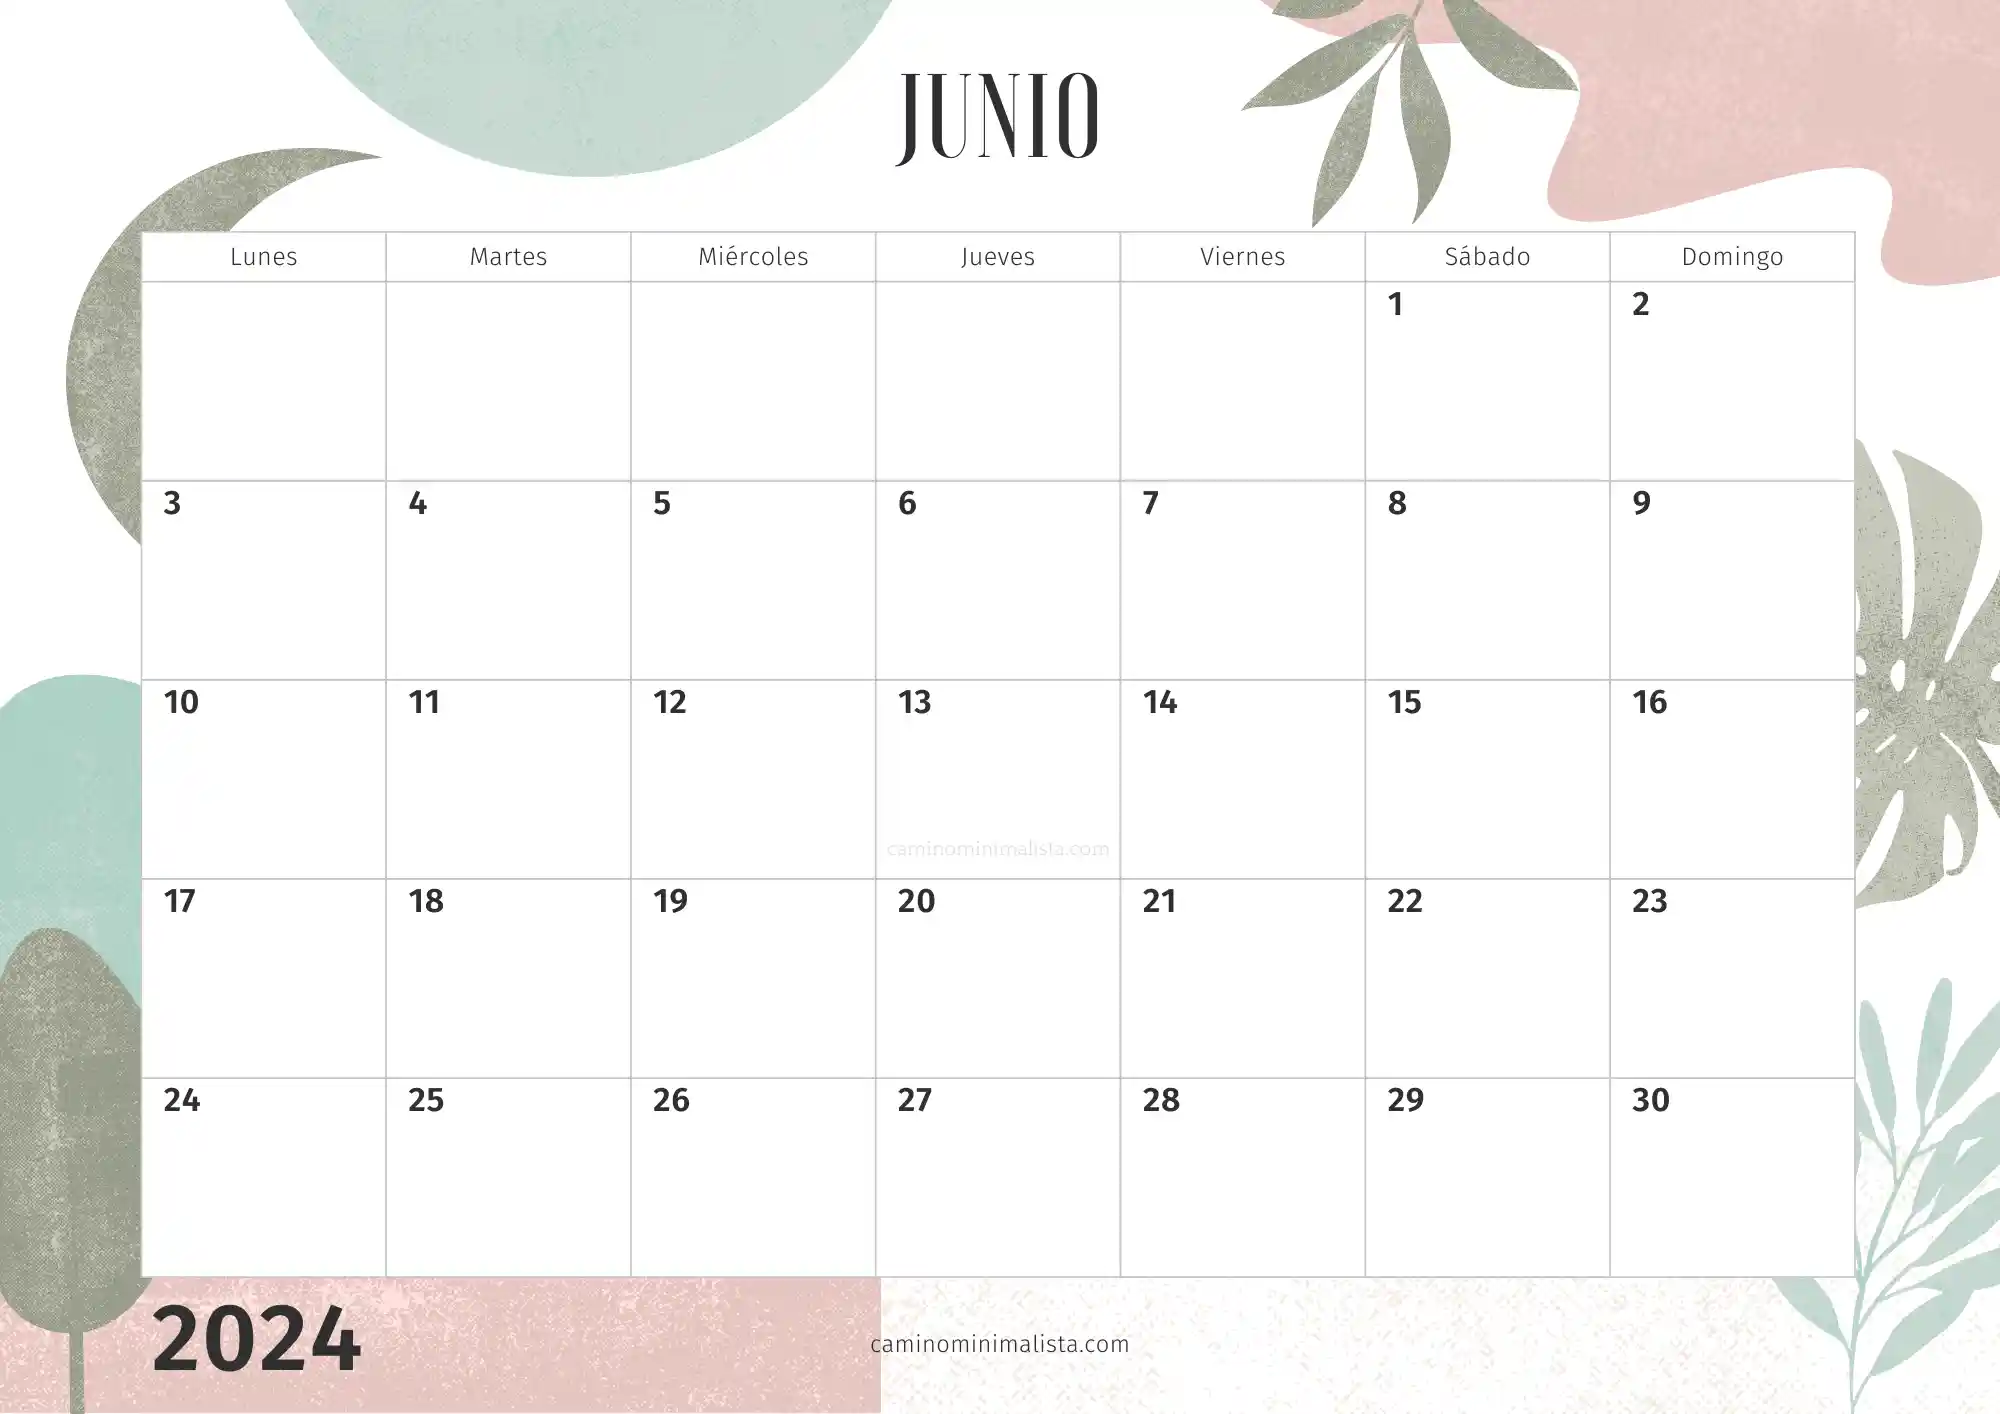 Calendario Junio 2024 decorado bonito